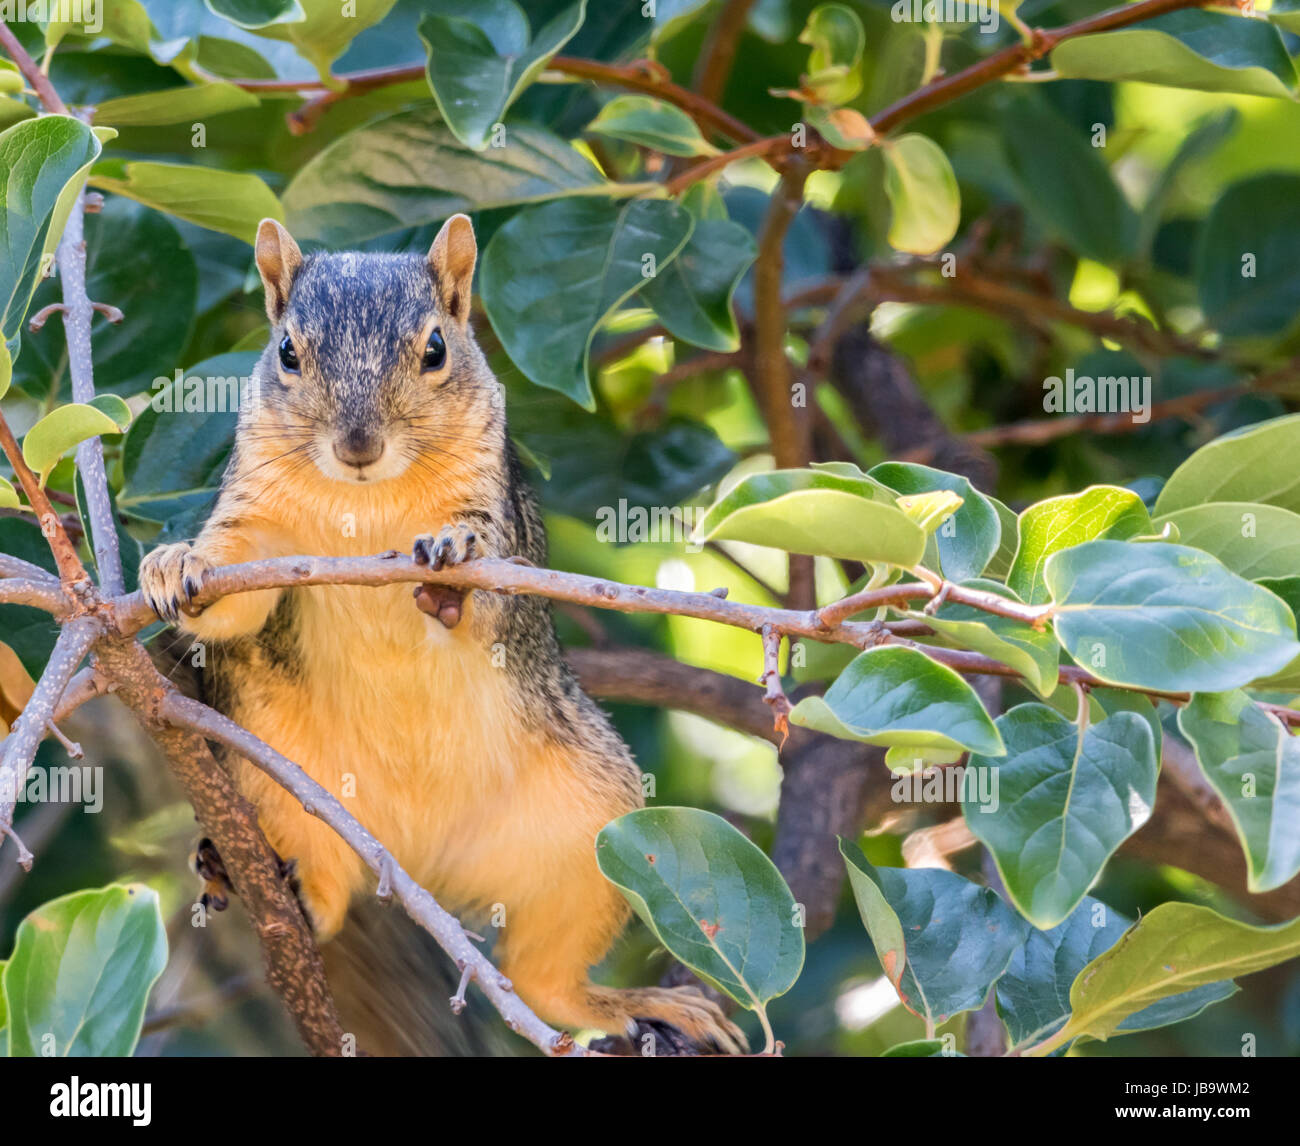 Eine kleine Fuchs, Eichhörnchen greift ein Ast und beobachtet seine Umgebung Stockfoto